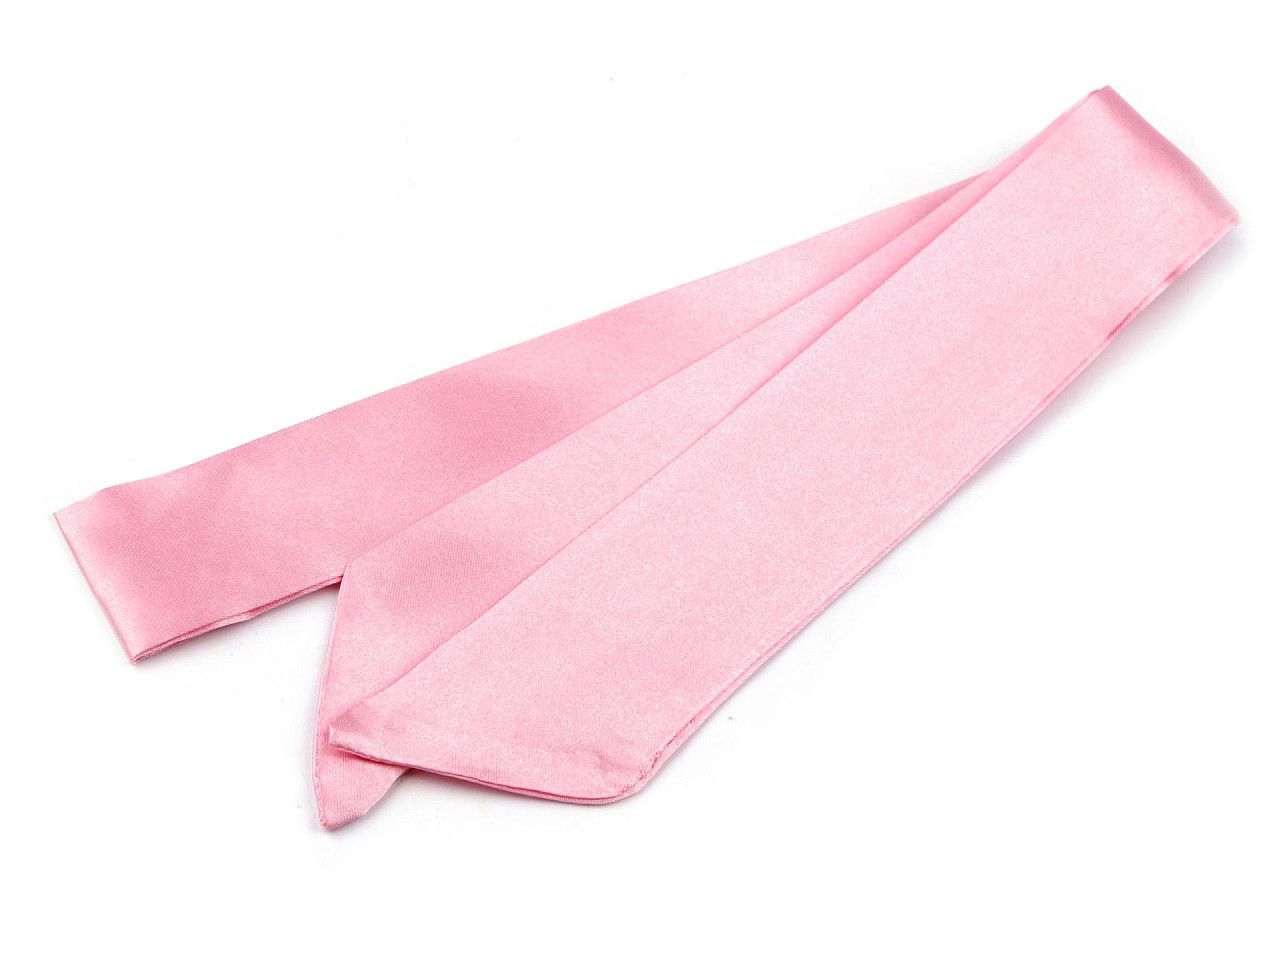 Šátek úzký do vlasů, na krk, na kabelku jednobarevný, s květy, barva 4 růžová sv.